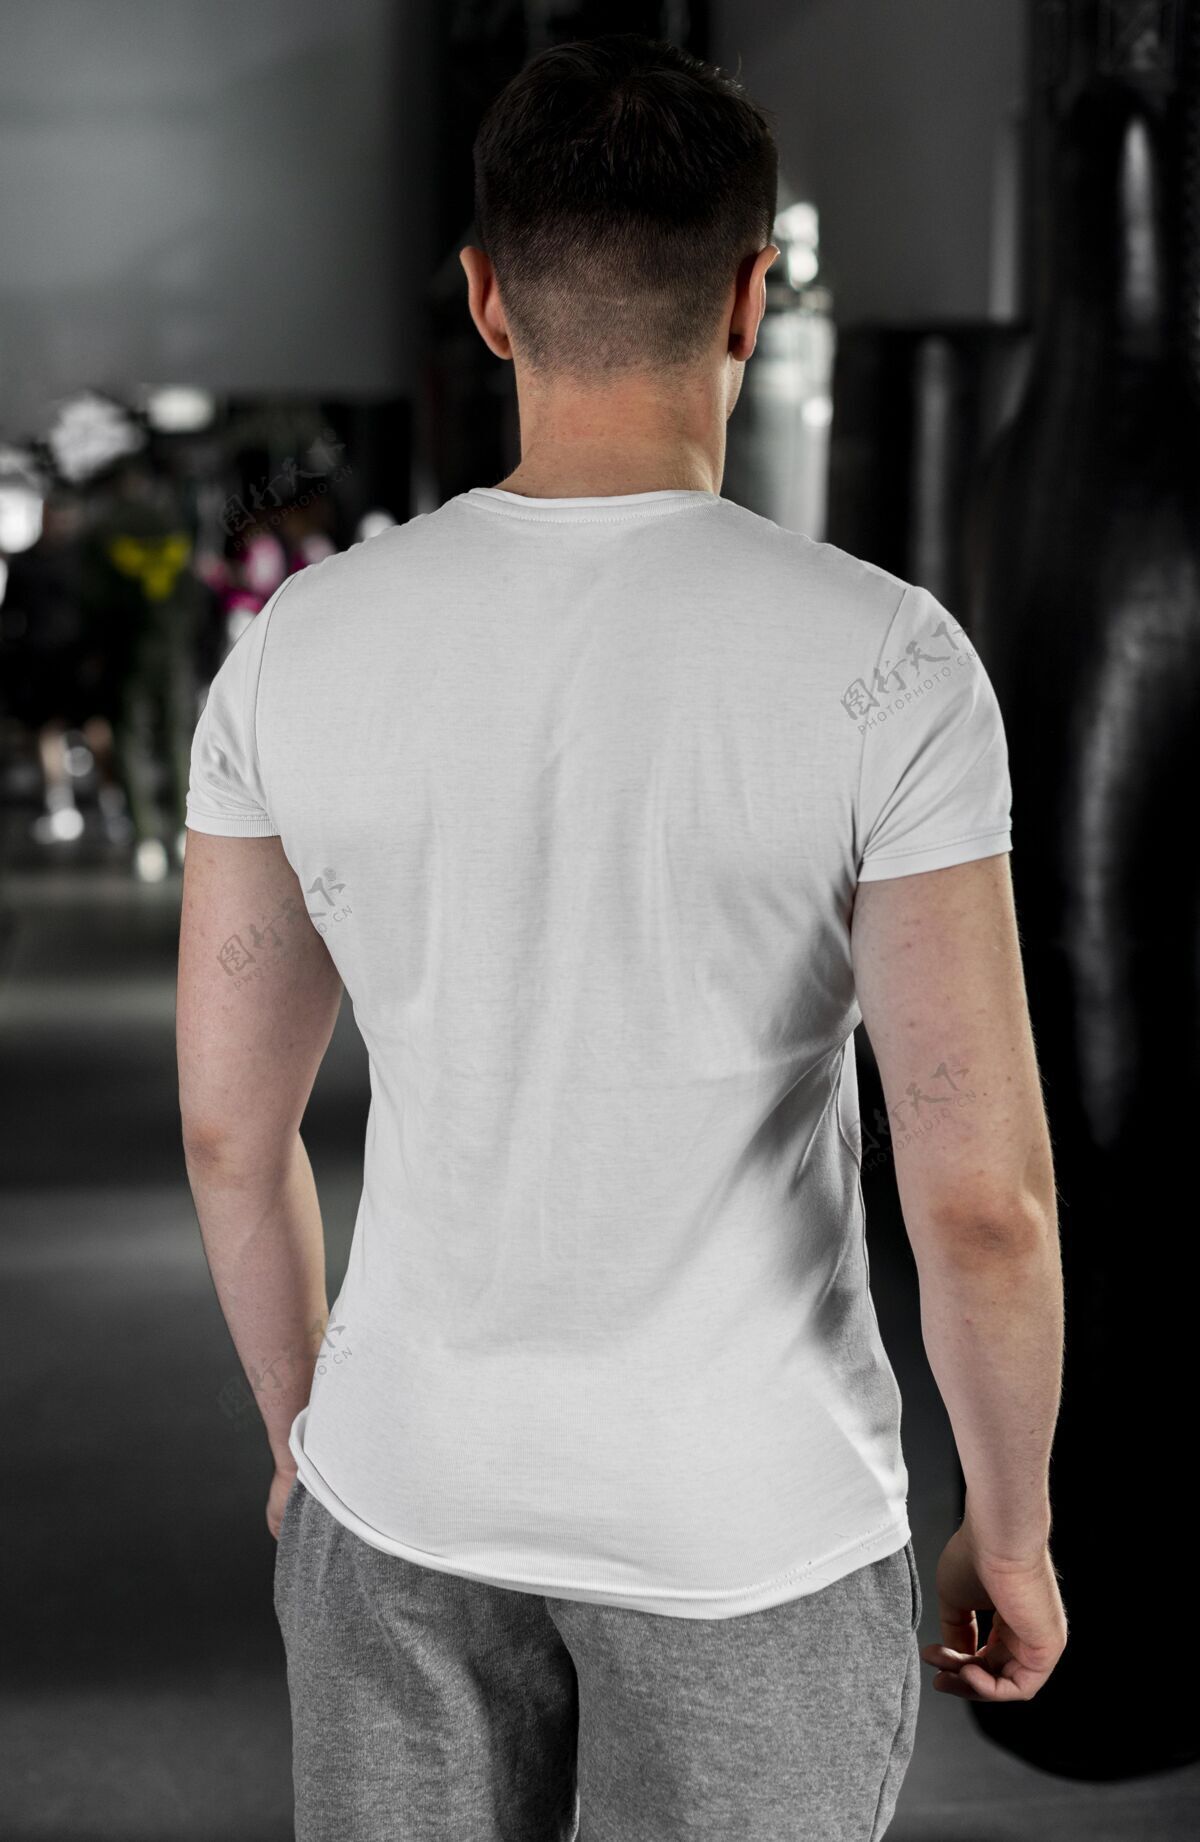 运动员穿拳击t恤的男人拳击运动健康